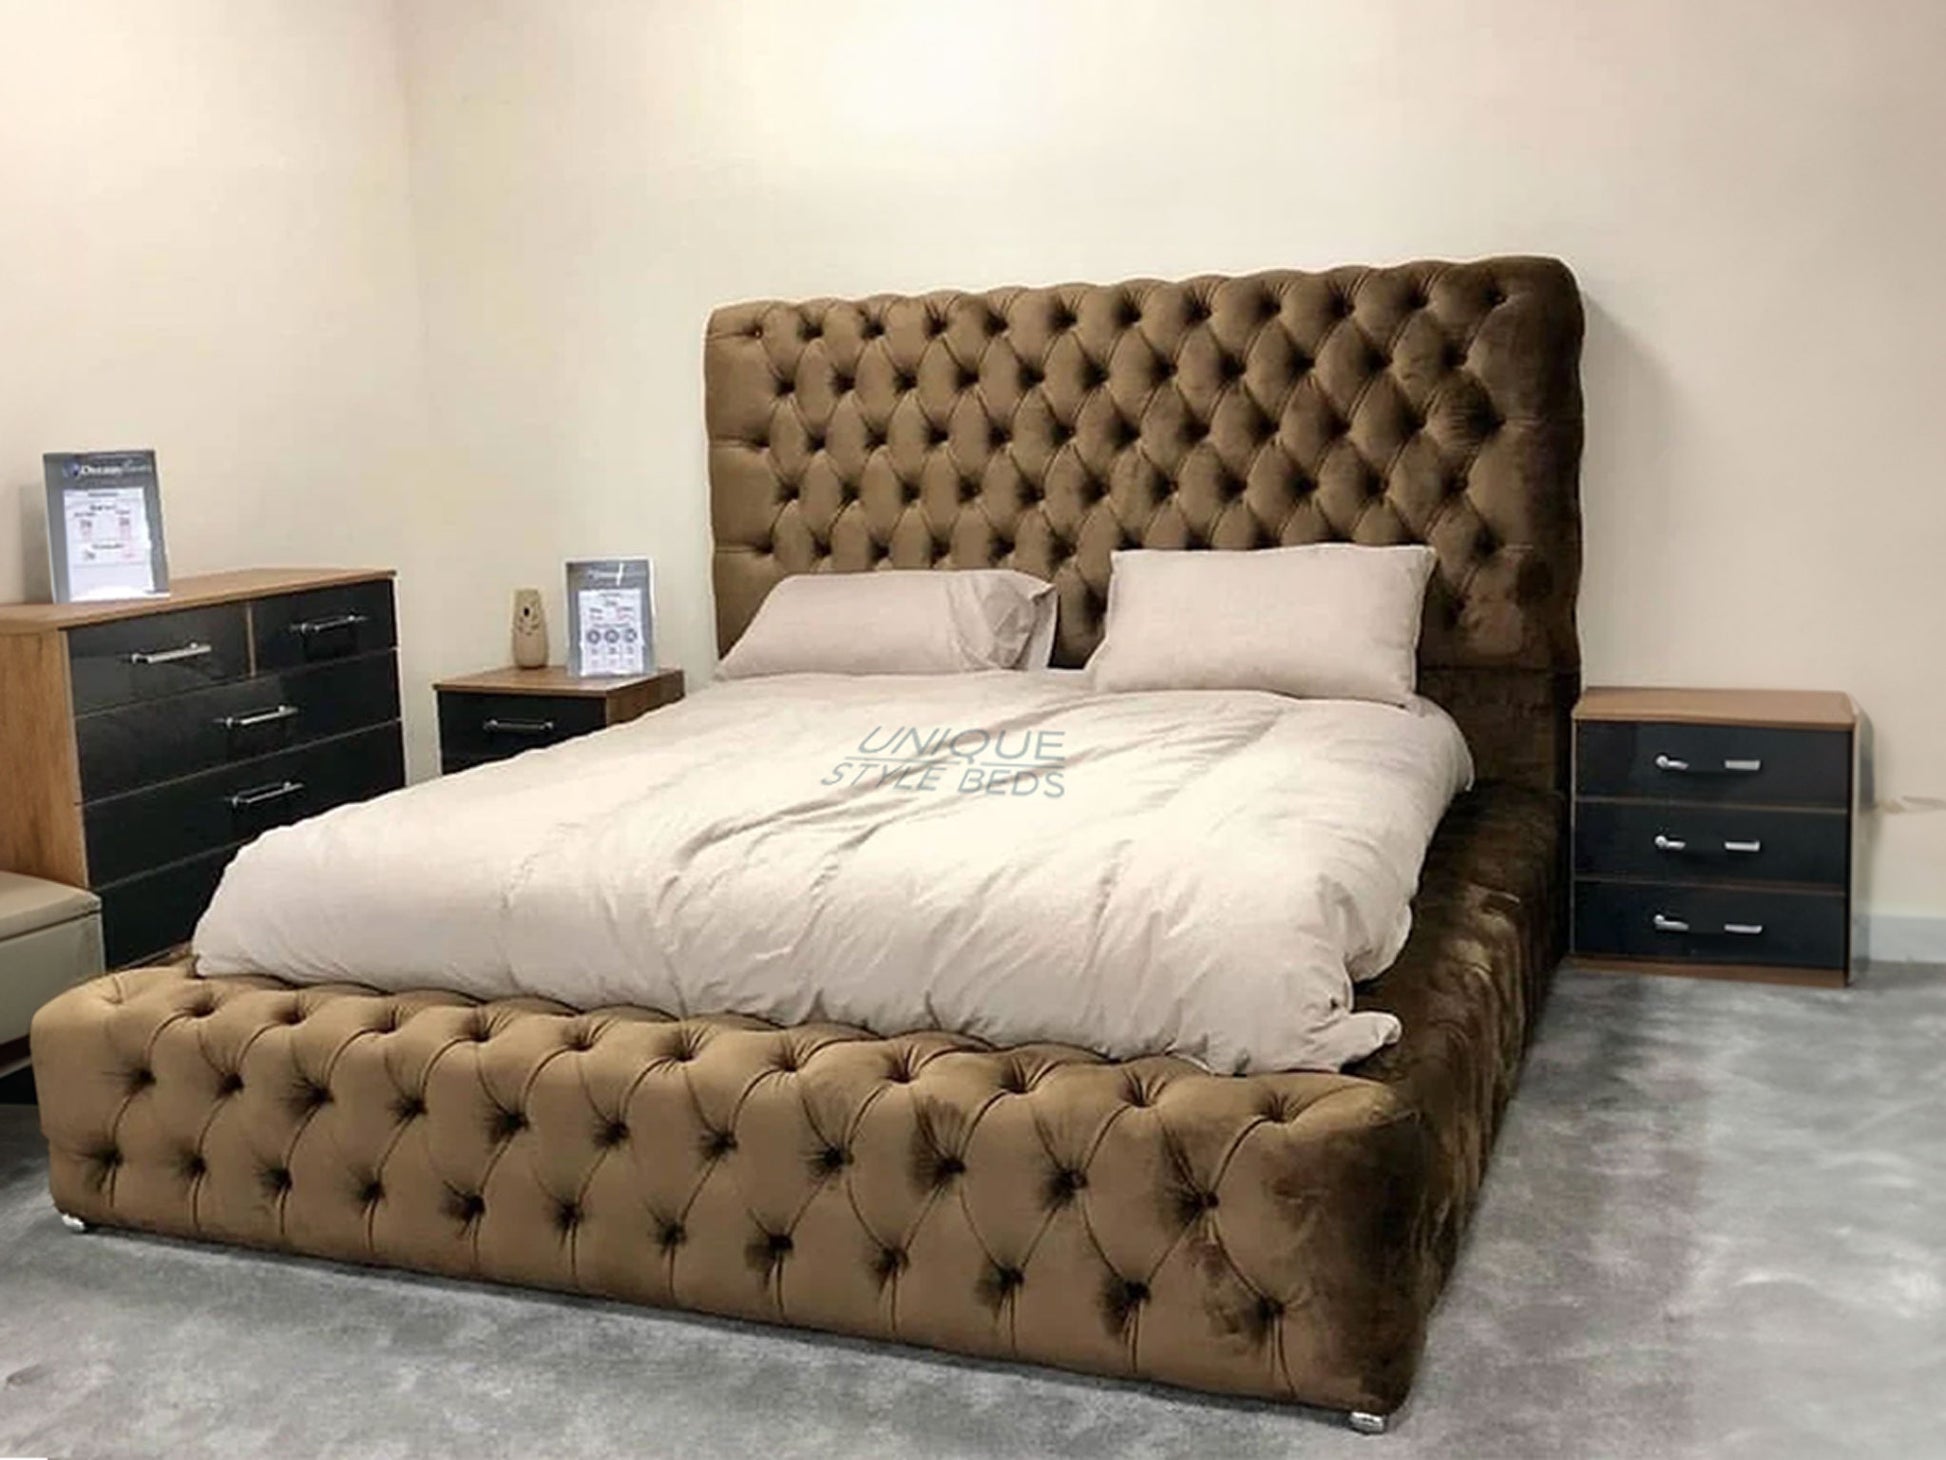 Haven Ambassador Bed Frame - Unique Style Beds. 